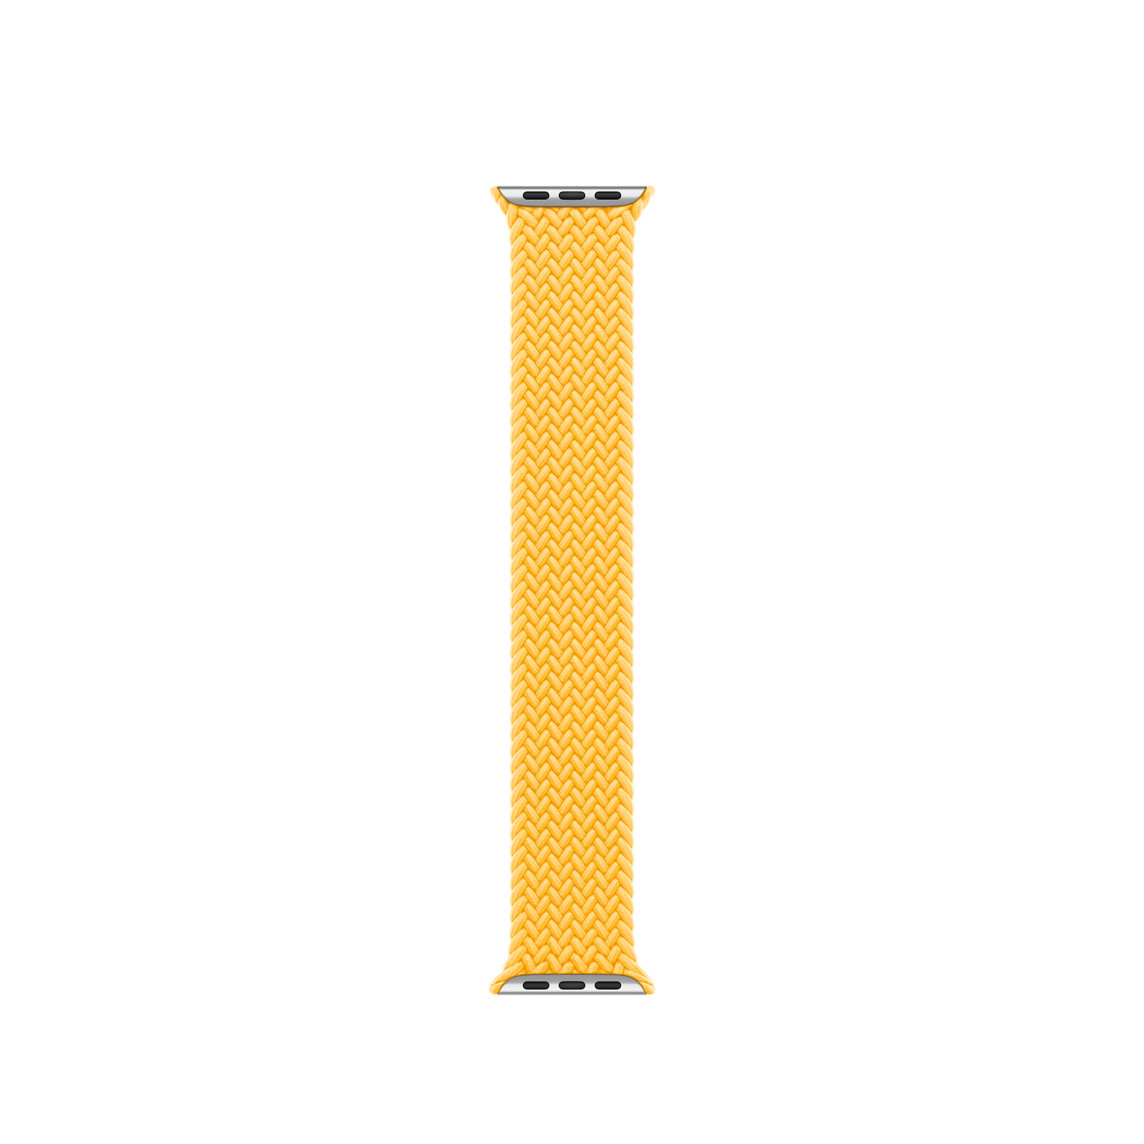 Paprskově žlutý pletený navlékací řemínek, tkaná polyesterová a silikonová vlákna bez jakéhokoli zapínání